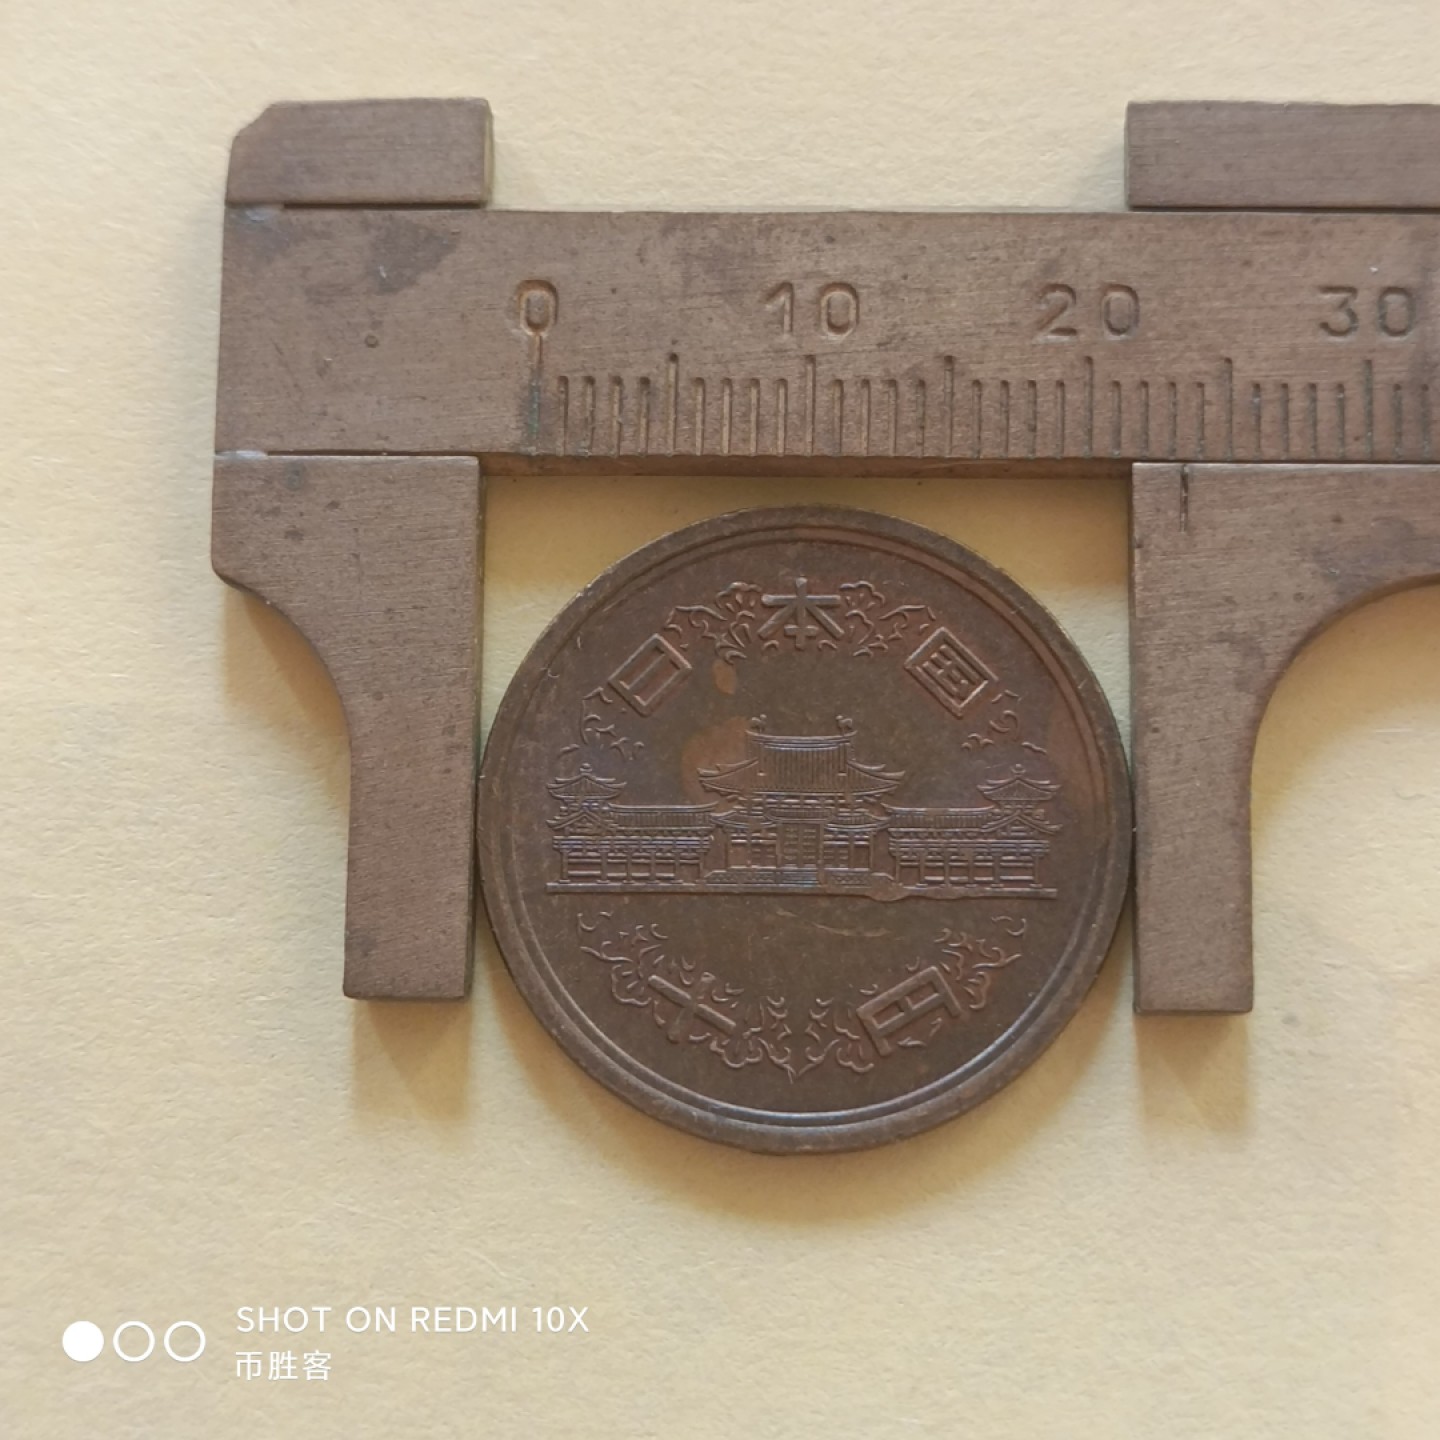 日本硬币 昭和五十六年1982年10日元
这个硬币其实很常见，不过这个品相挺有意思，图案是建于日本平安时期的平等院凤凰堂